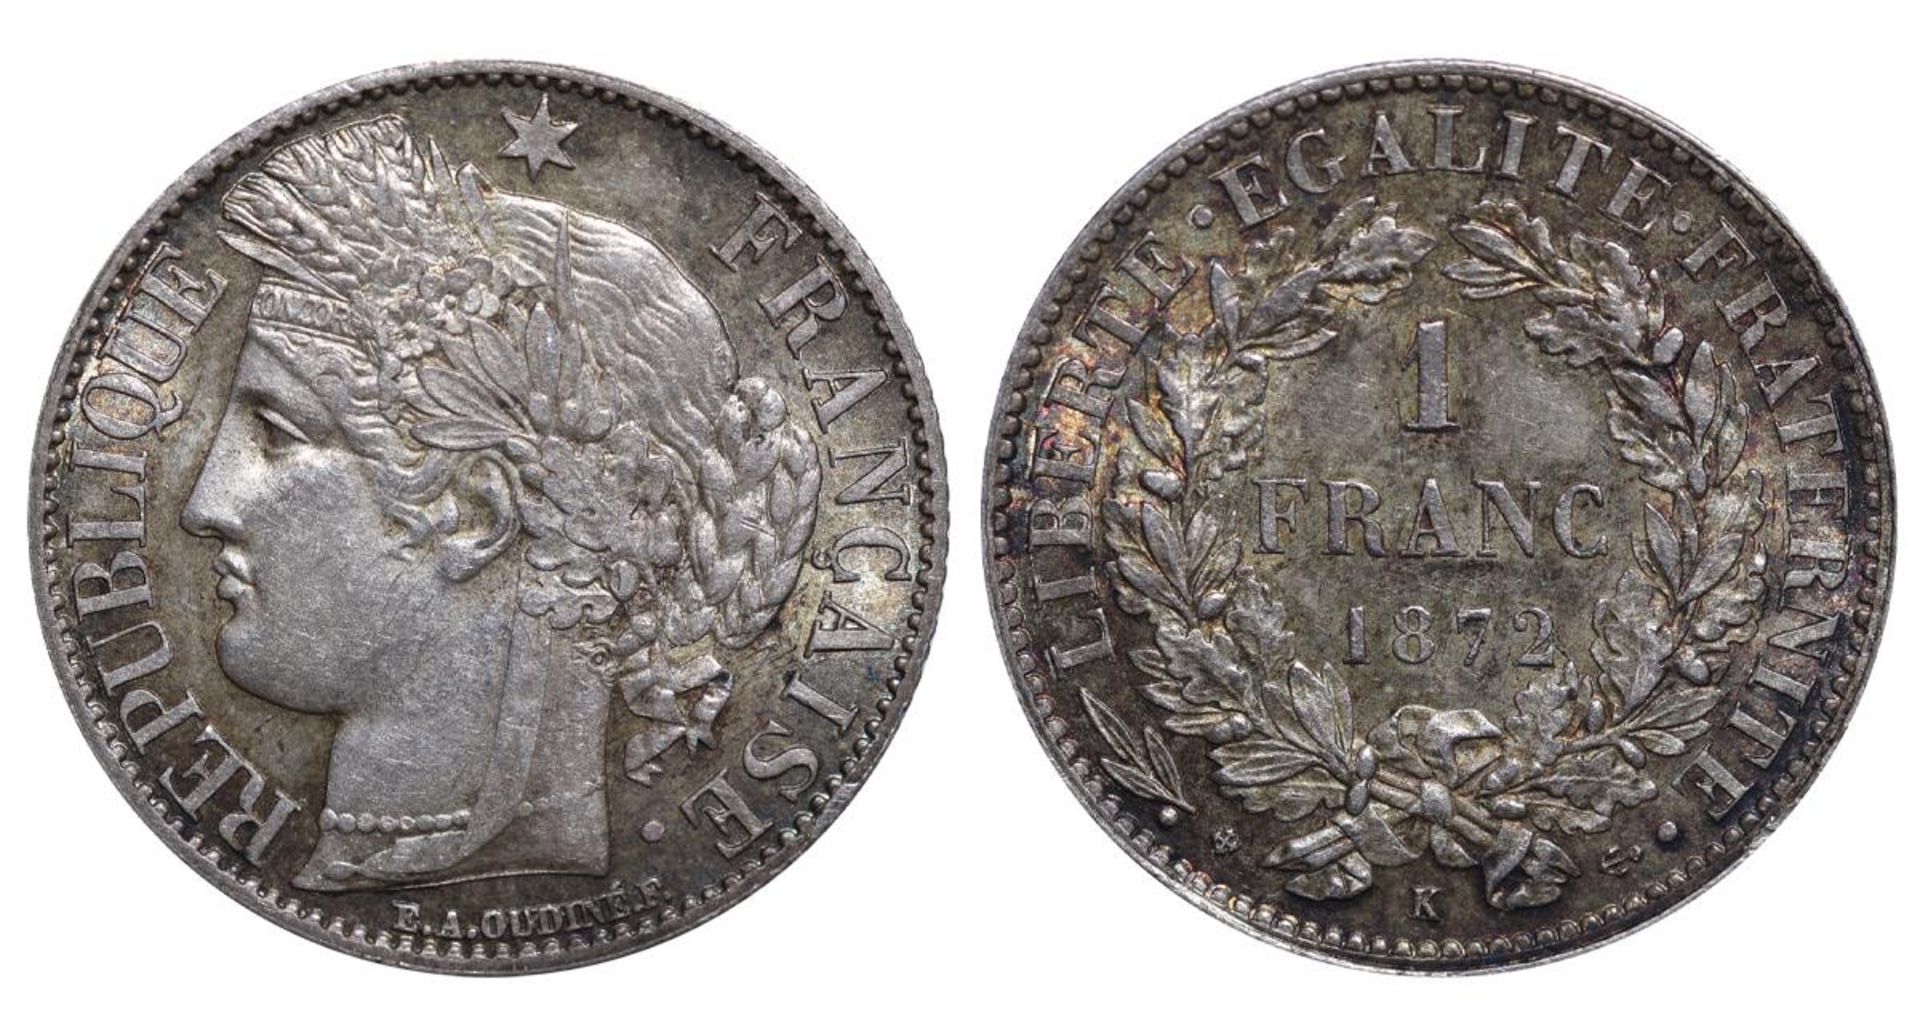 France, 1 Franc, 1872 year, K